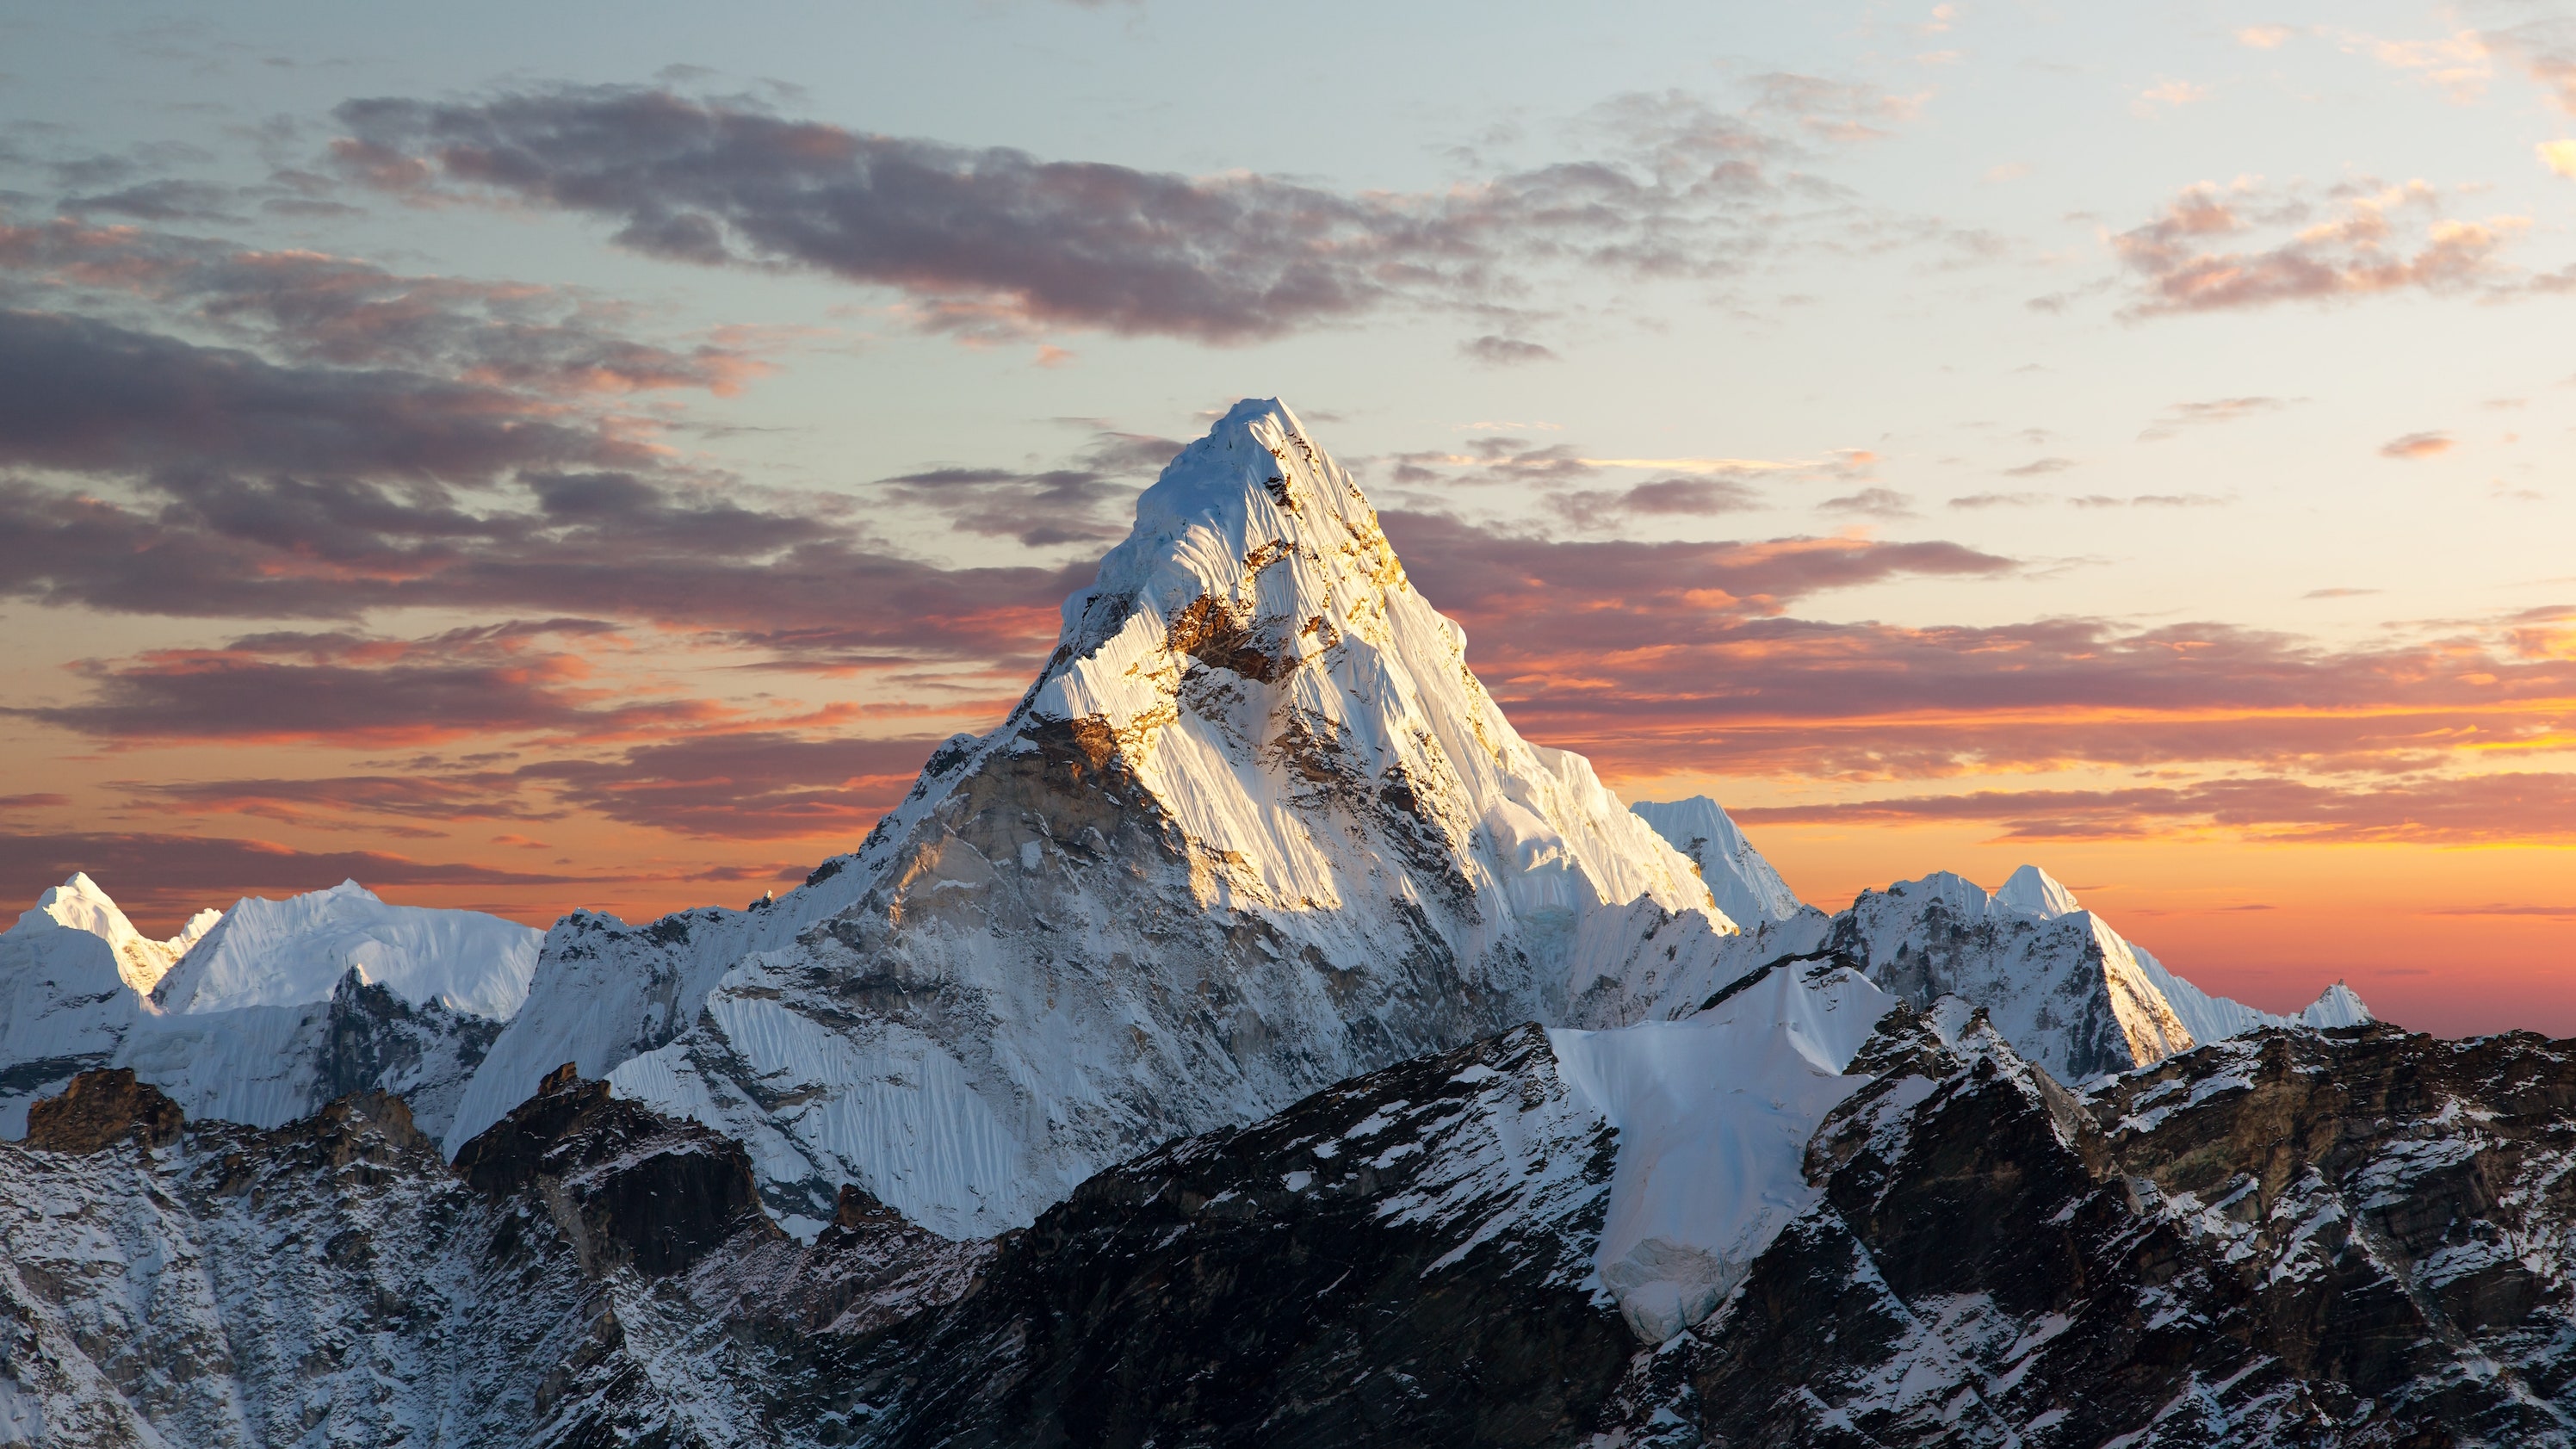 Mount everest is high in the world. Гималаи Эверест Джомолунгма. Самая высокая гора Джомолунгма. Гора Эверест 8848 м. Пик вершины Эвереста.